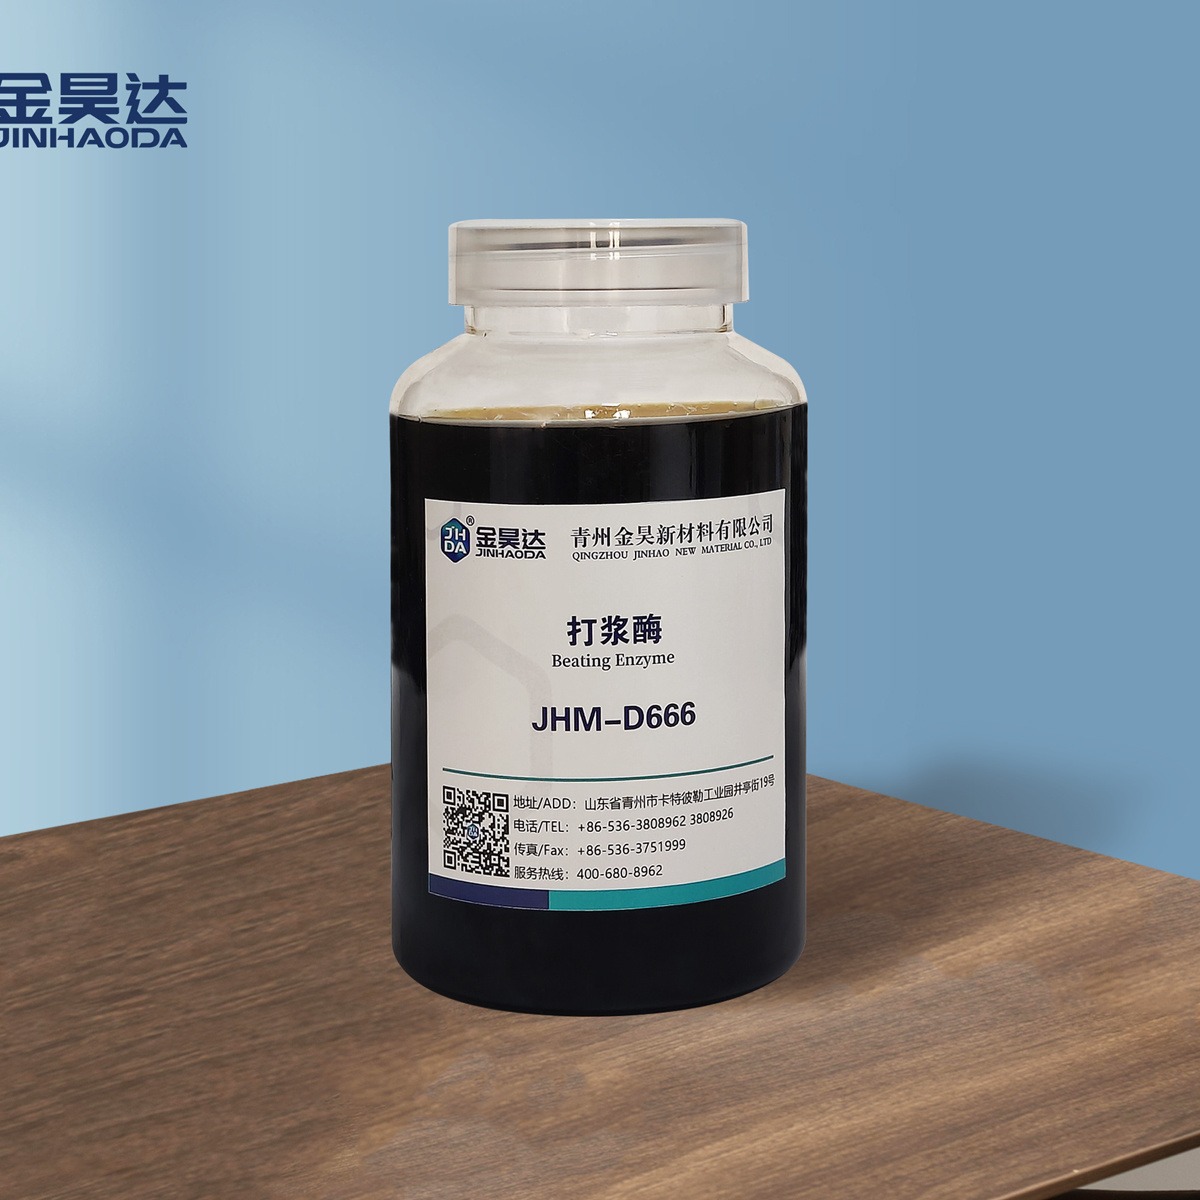 山东金昊 JHM-D666打浆酶 延长磨刀使用寿命，节约成本，提高浆产量 造纸酶 厂家供应图片